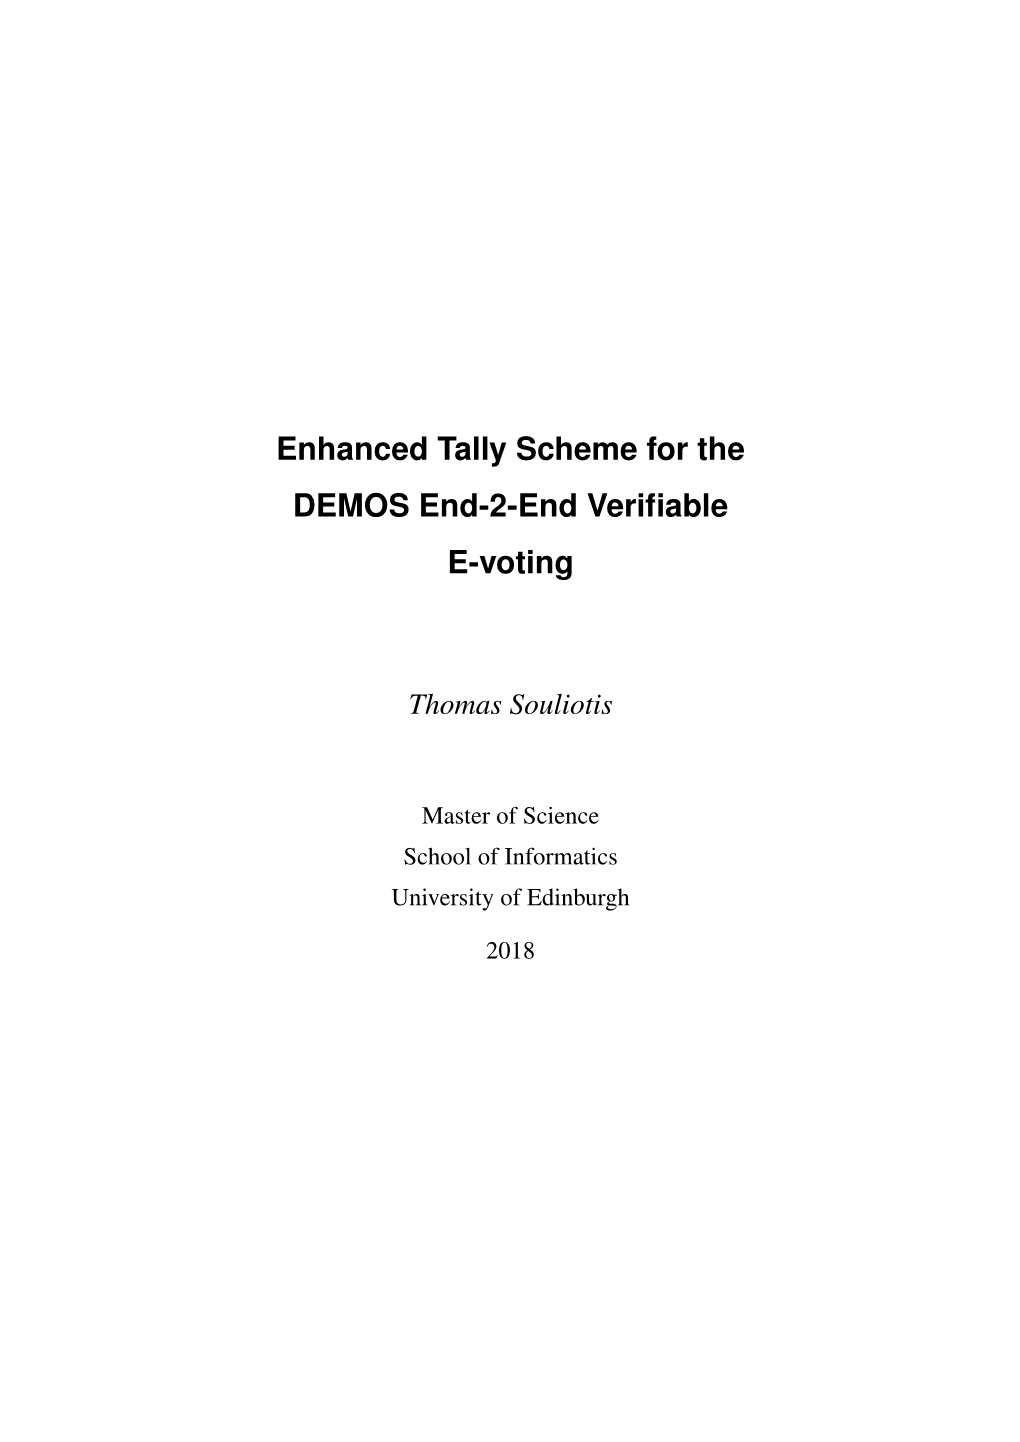 Enhanced Tally Scheme for the DEMOS End-2-End Verifiable E